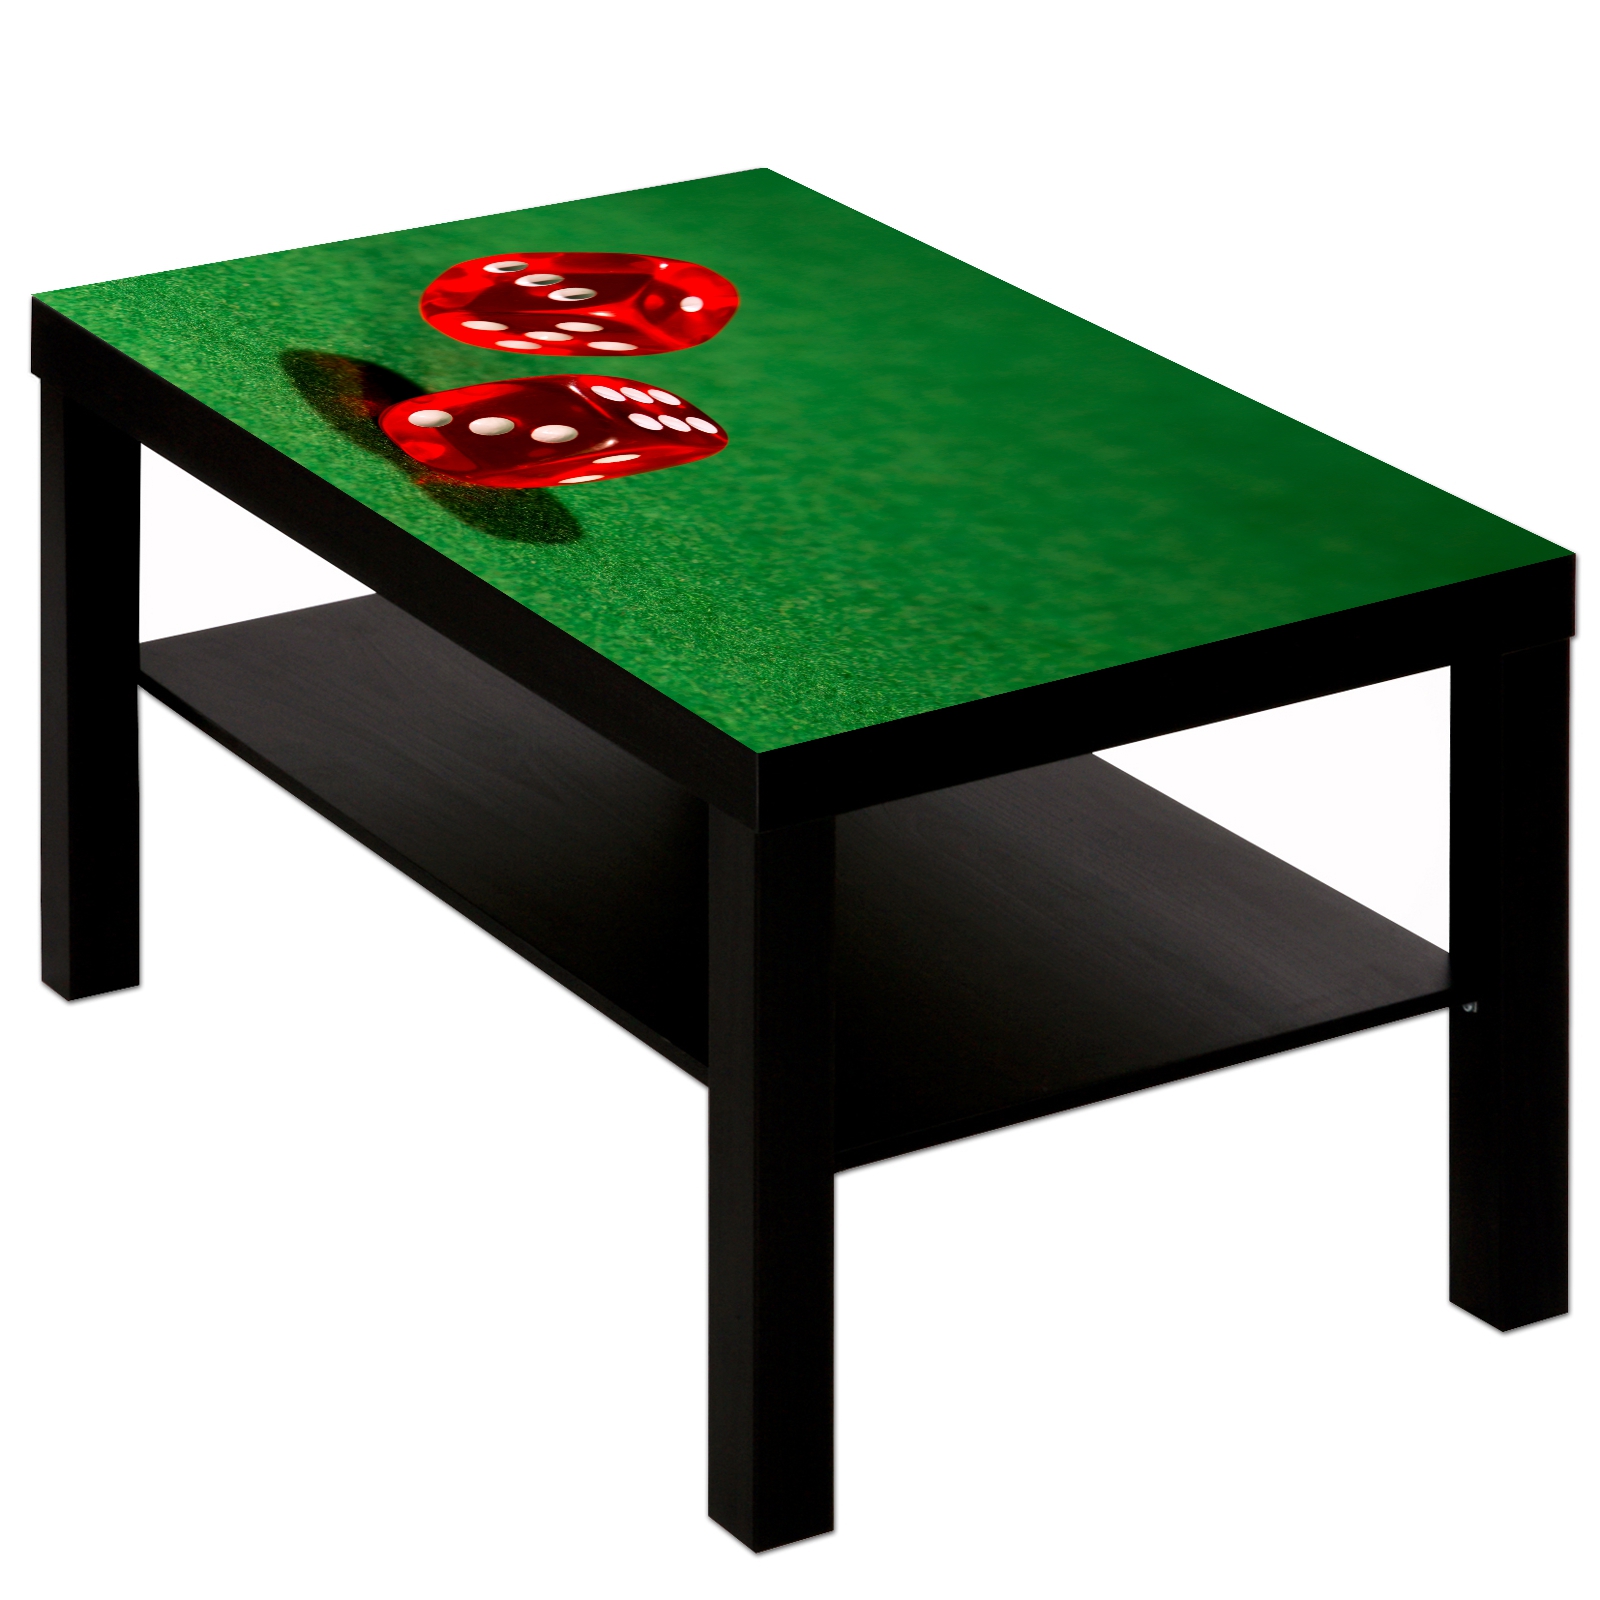 Couchtisch mit Motiv Casino Poker Würfel rot auf grün